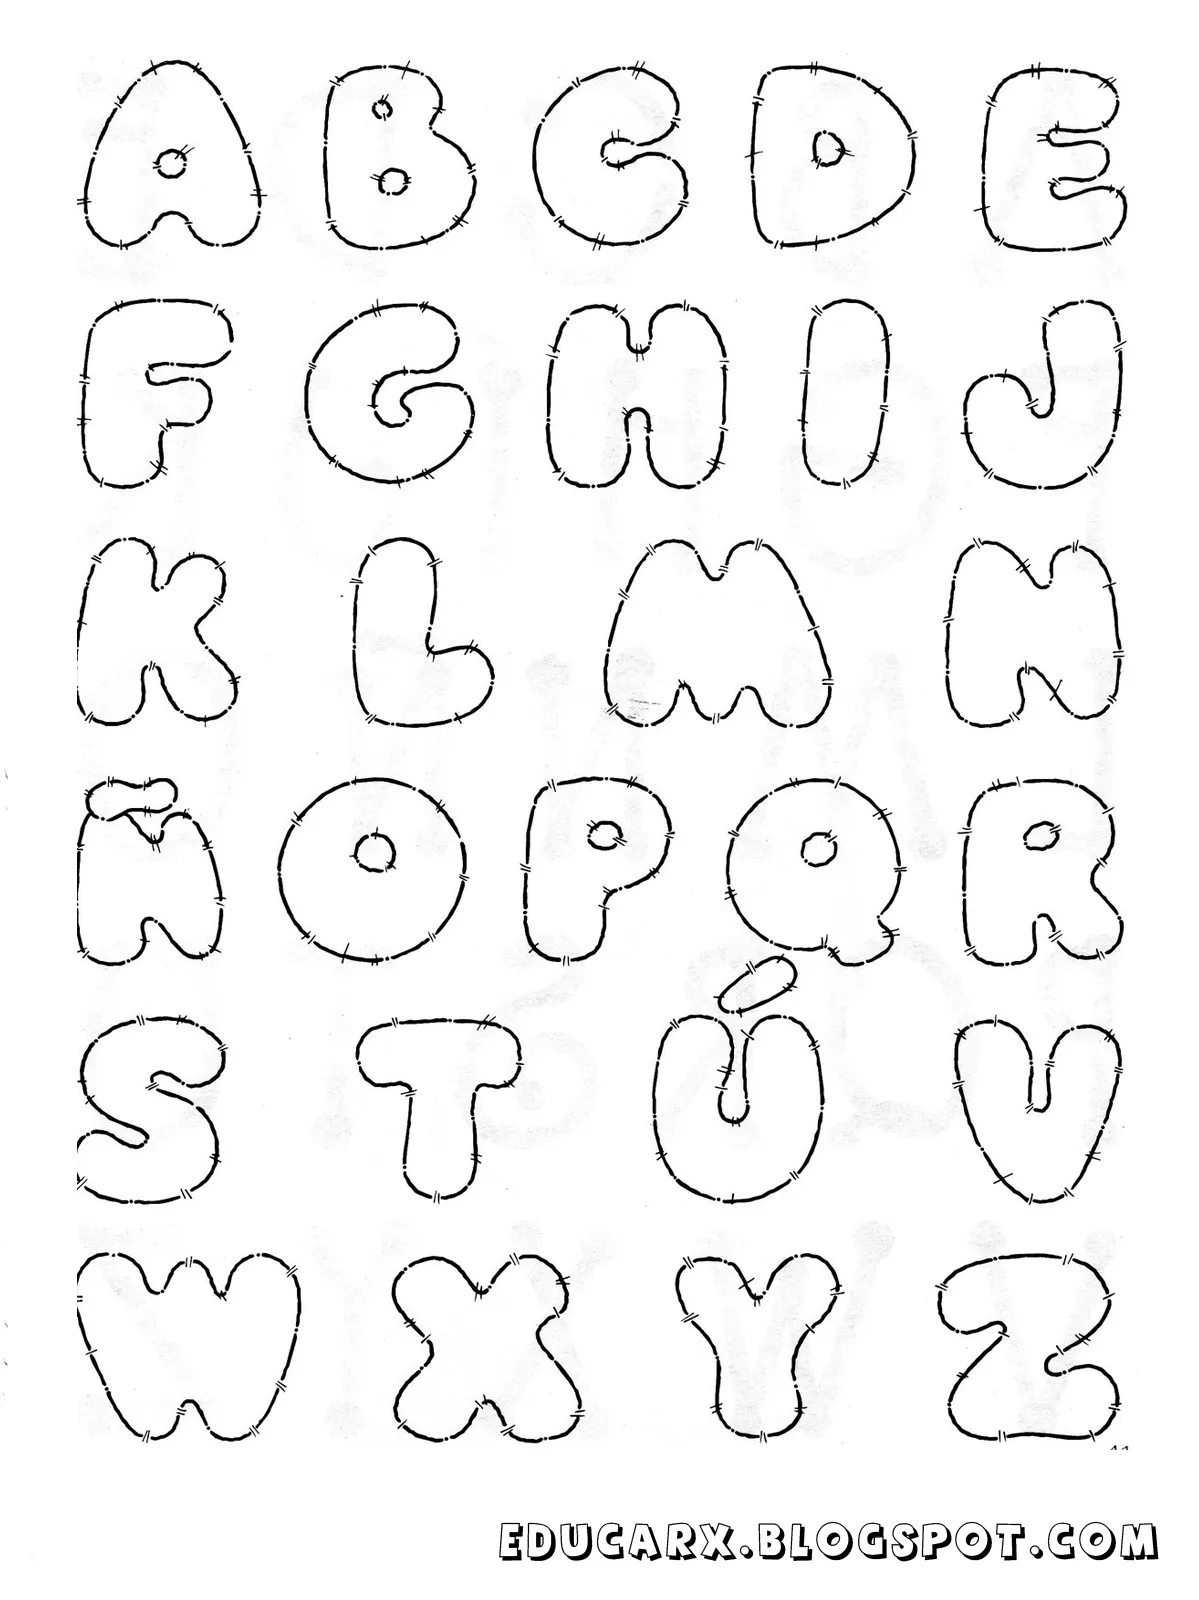 Educar X: Modelo de letras (12 modelos de letras diferentes)